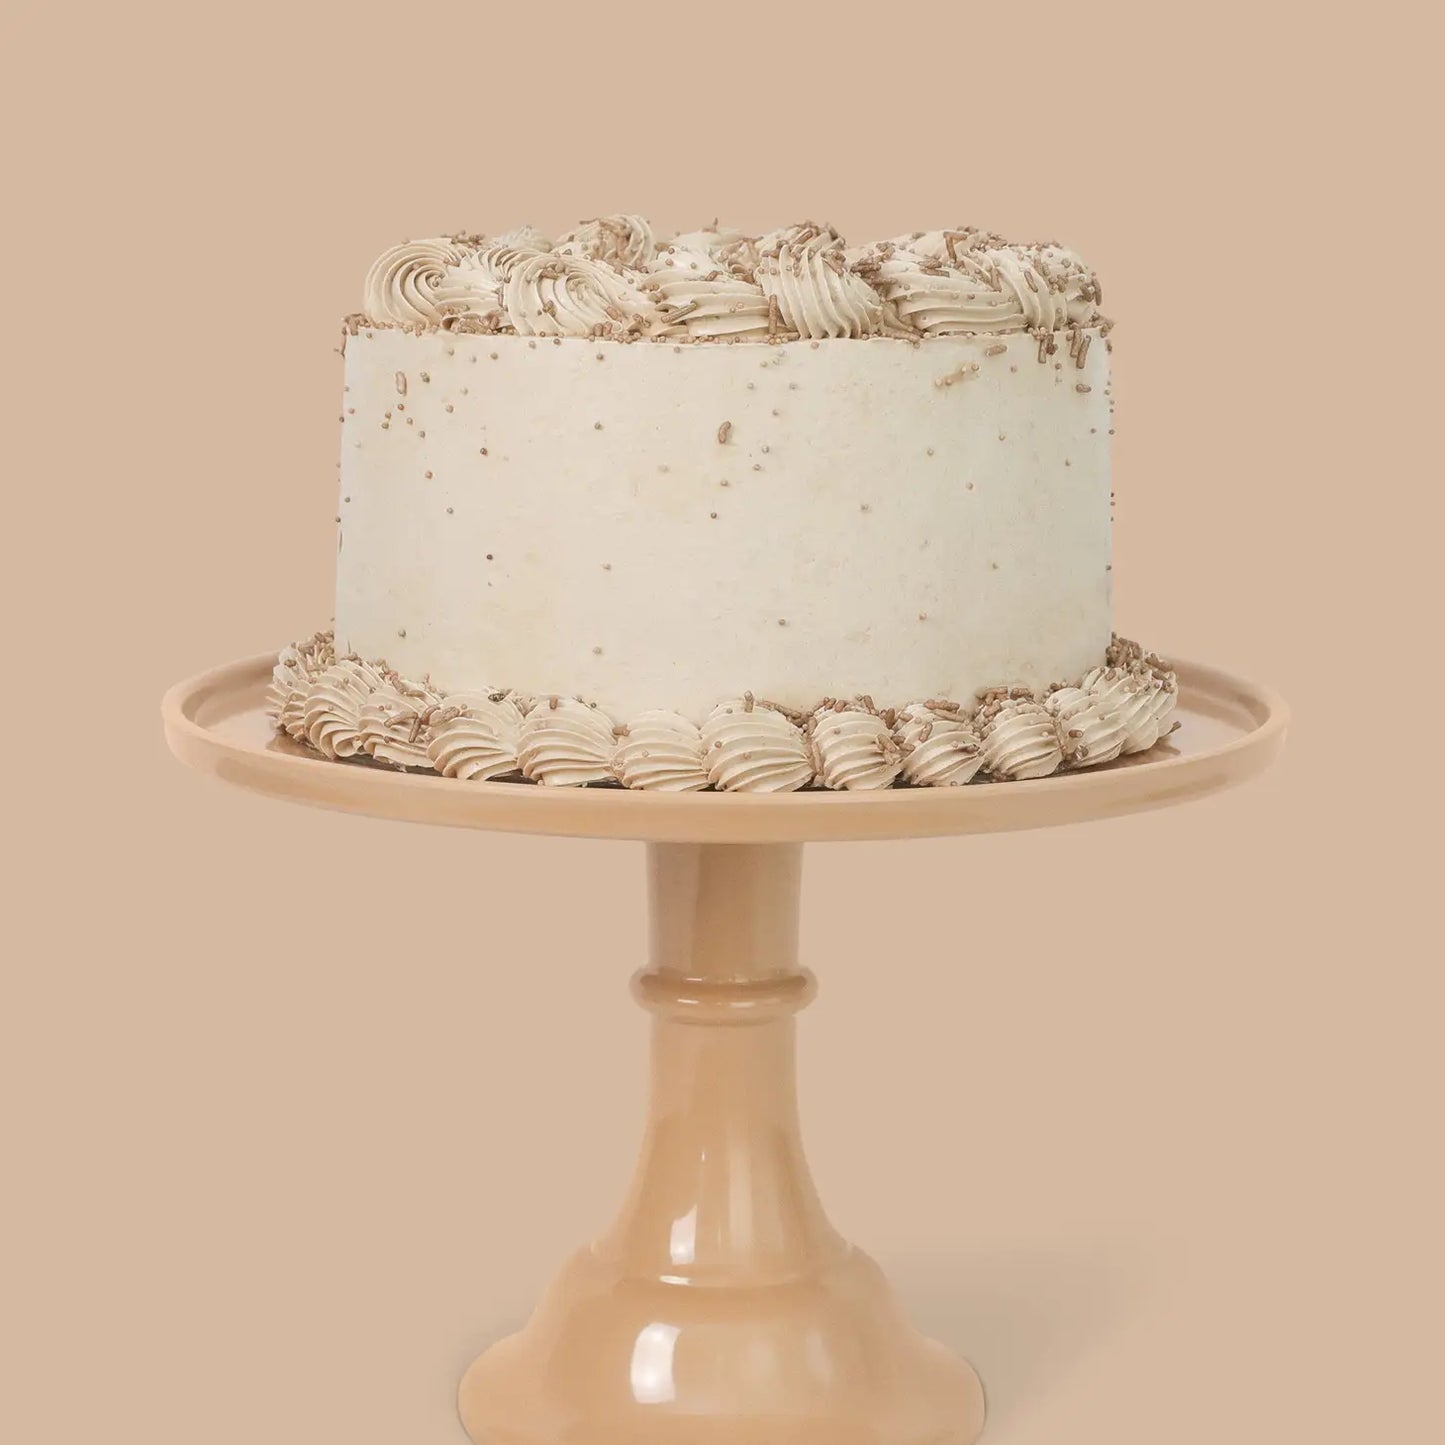 Melamine Bespoke Cake Stand Large - Latte